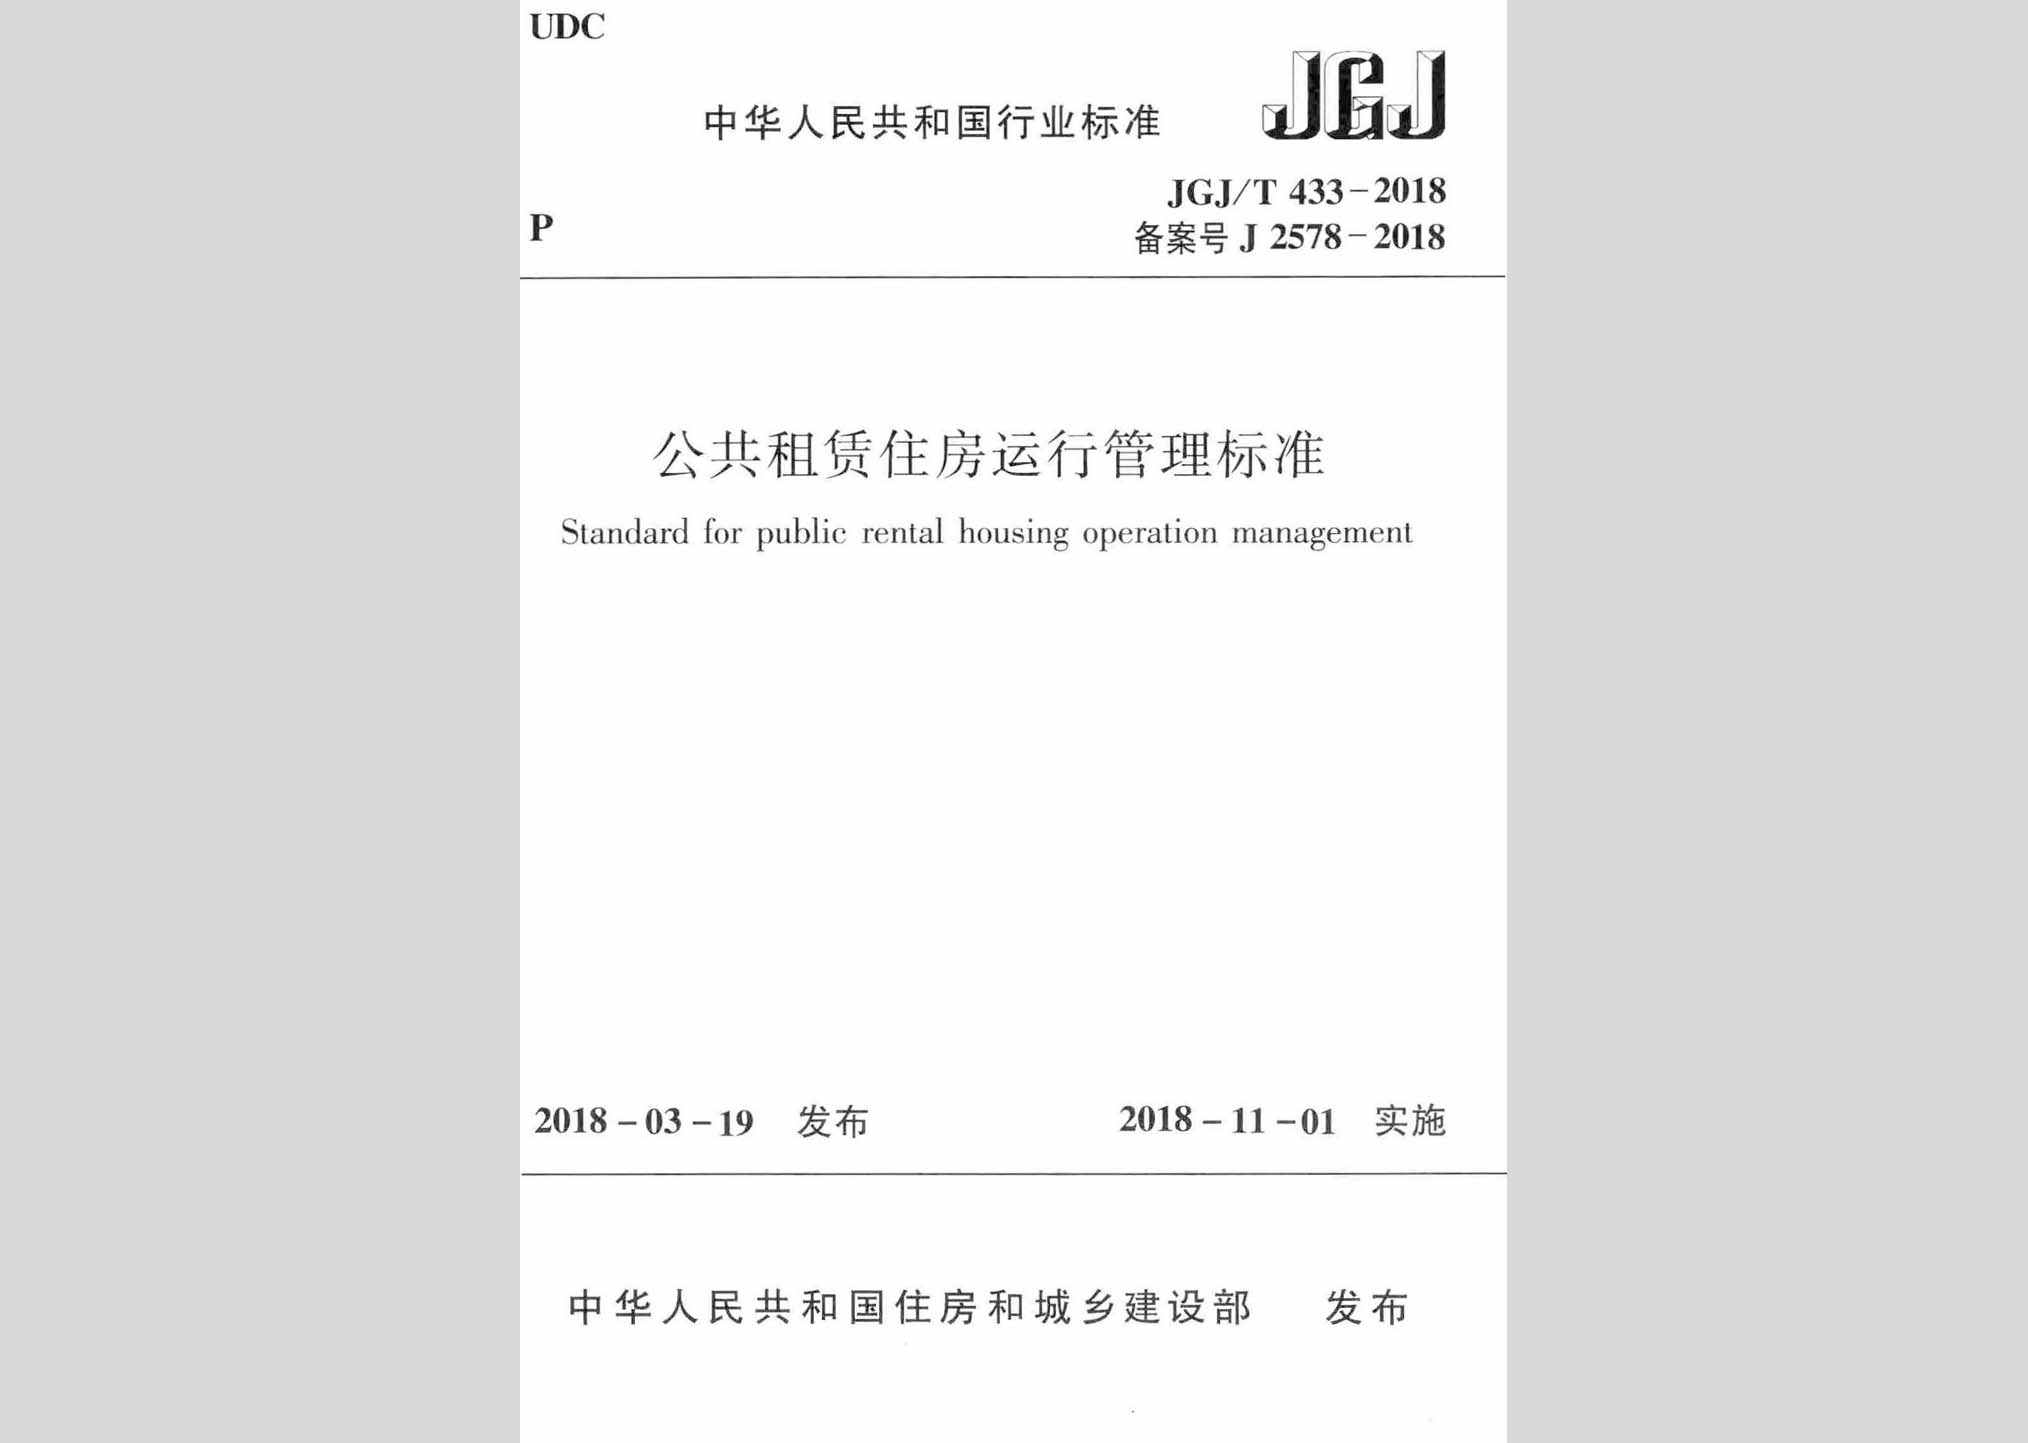 JGJ/T433-2018：公共租赁住房运行管理标准